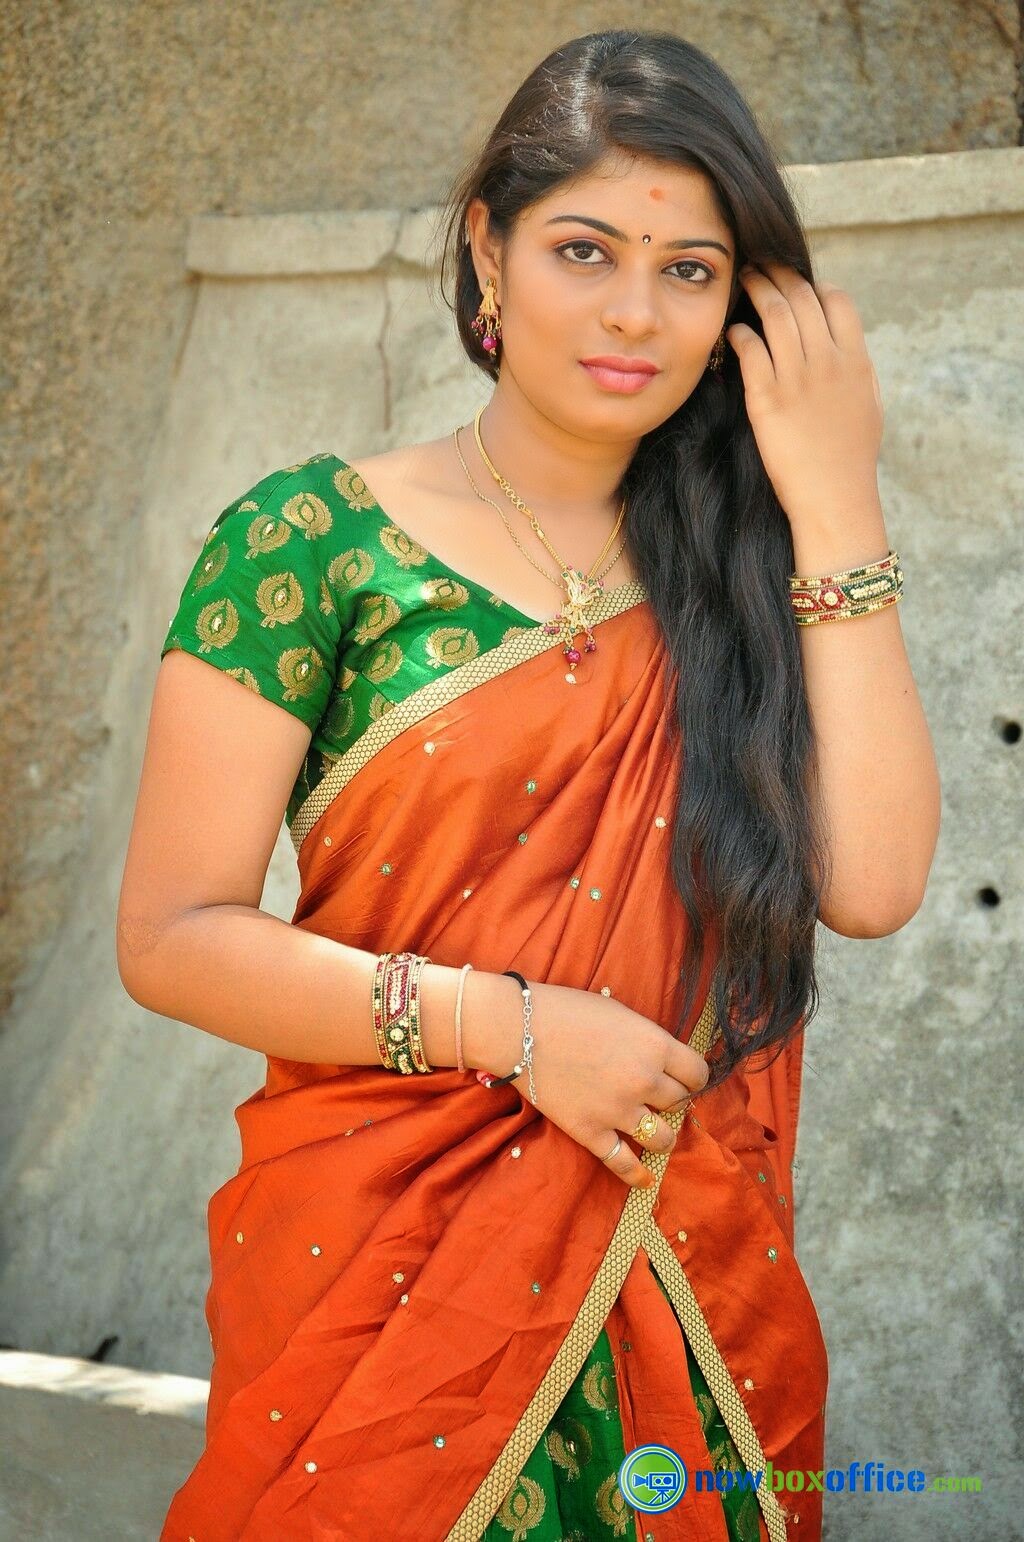 Anusha South Actress Hot Photos In Saree Bollywood Actress Photos